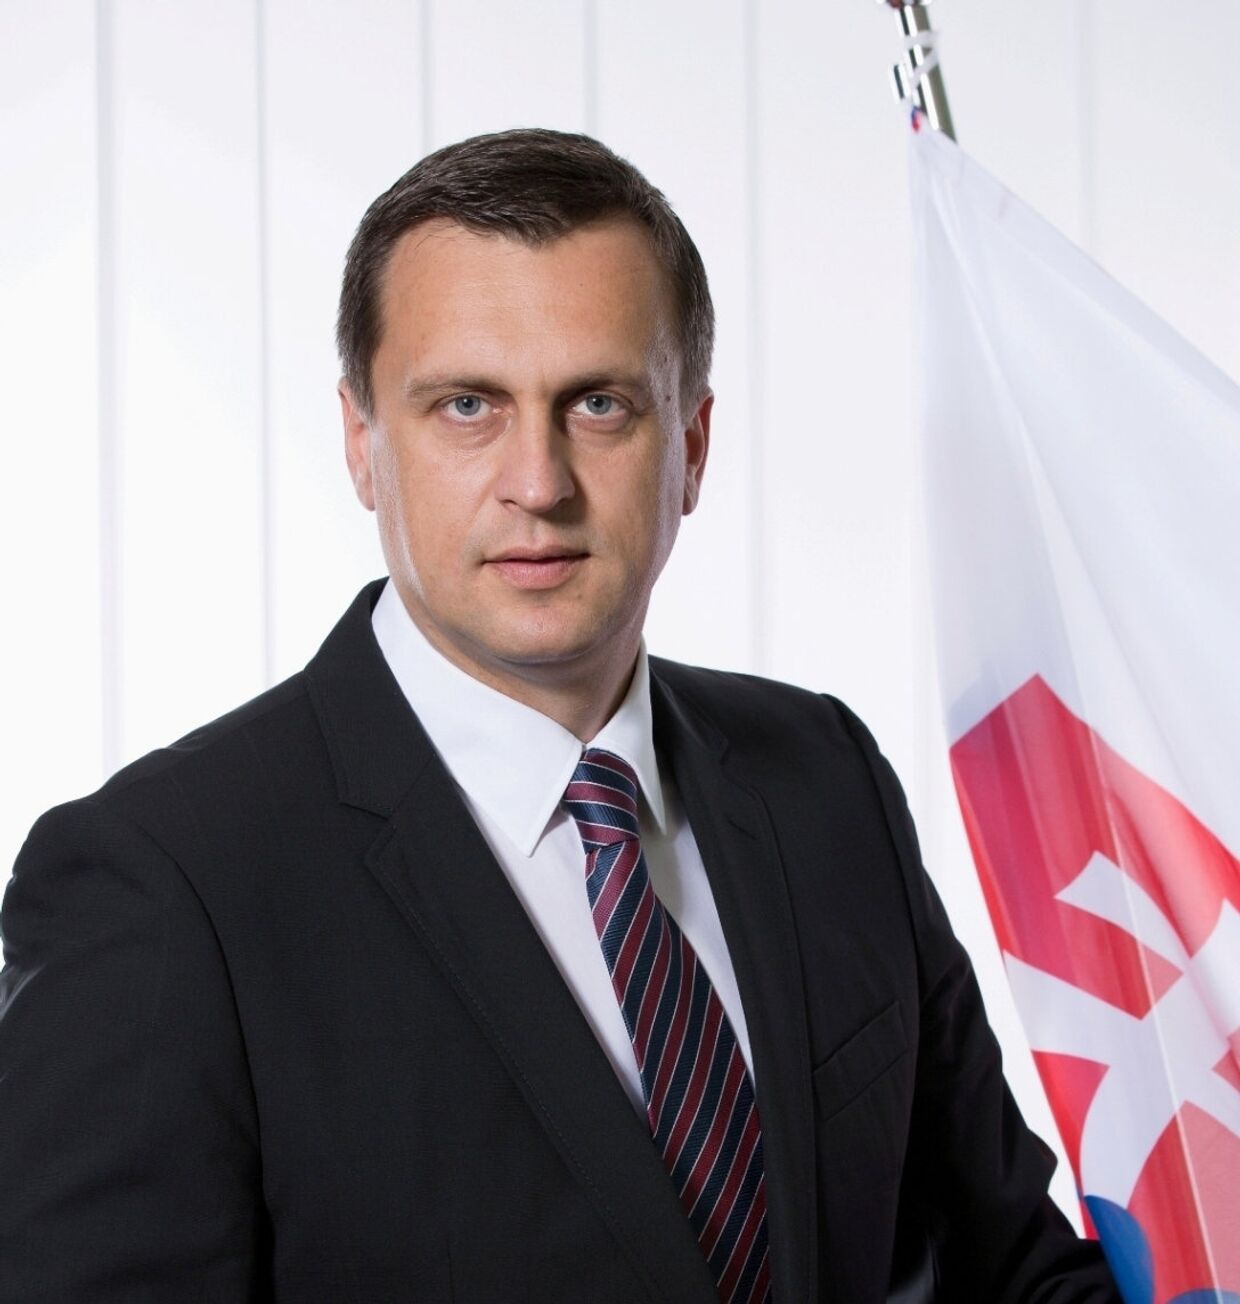 Словацкий политик Андрей Данко